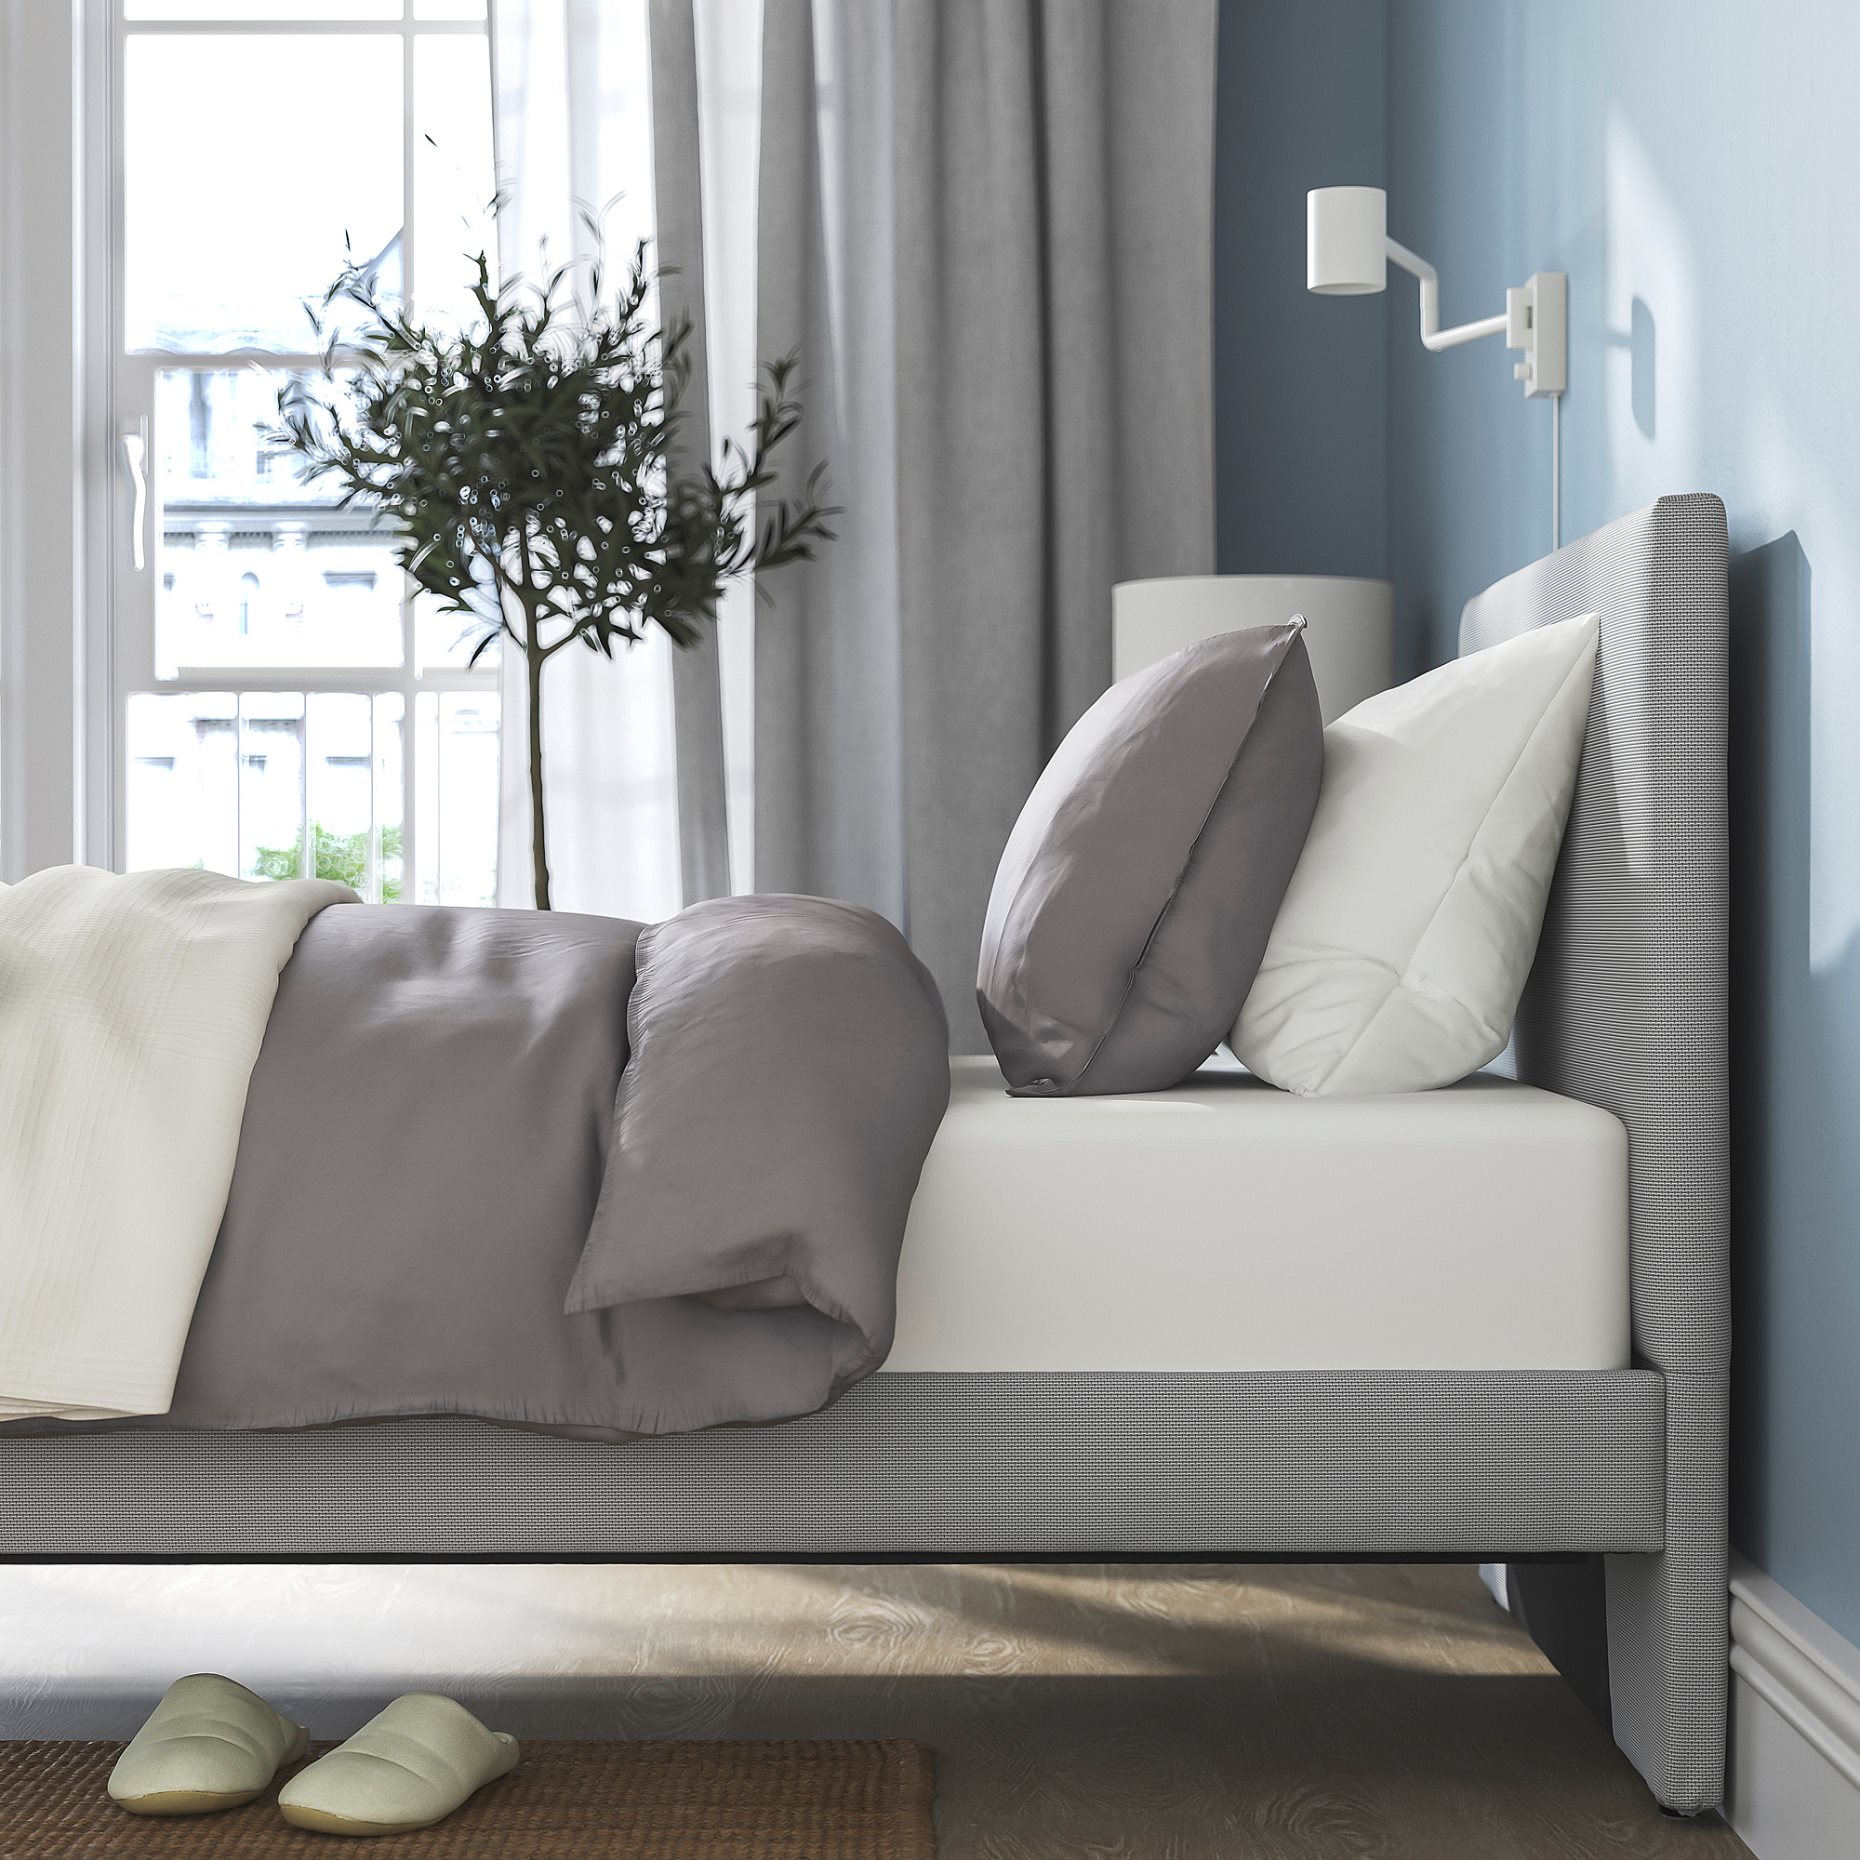 GLADSTAD, upholstered bed frame, 90x200 cm, 504.904.59